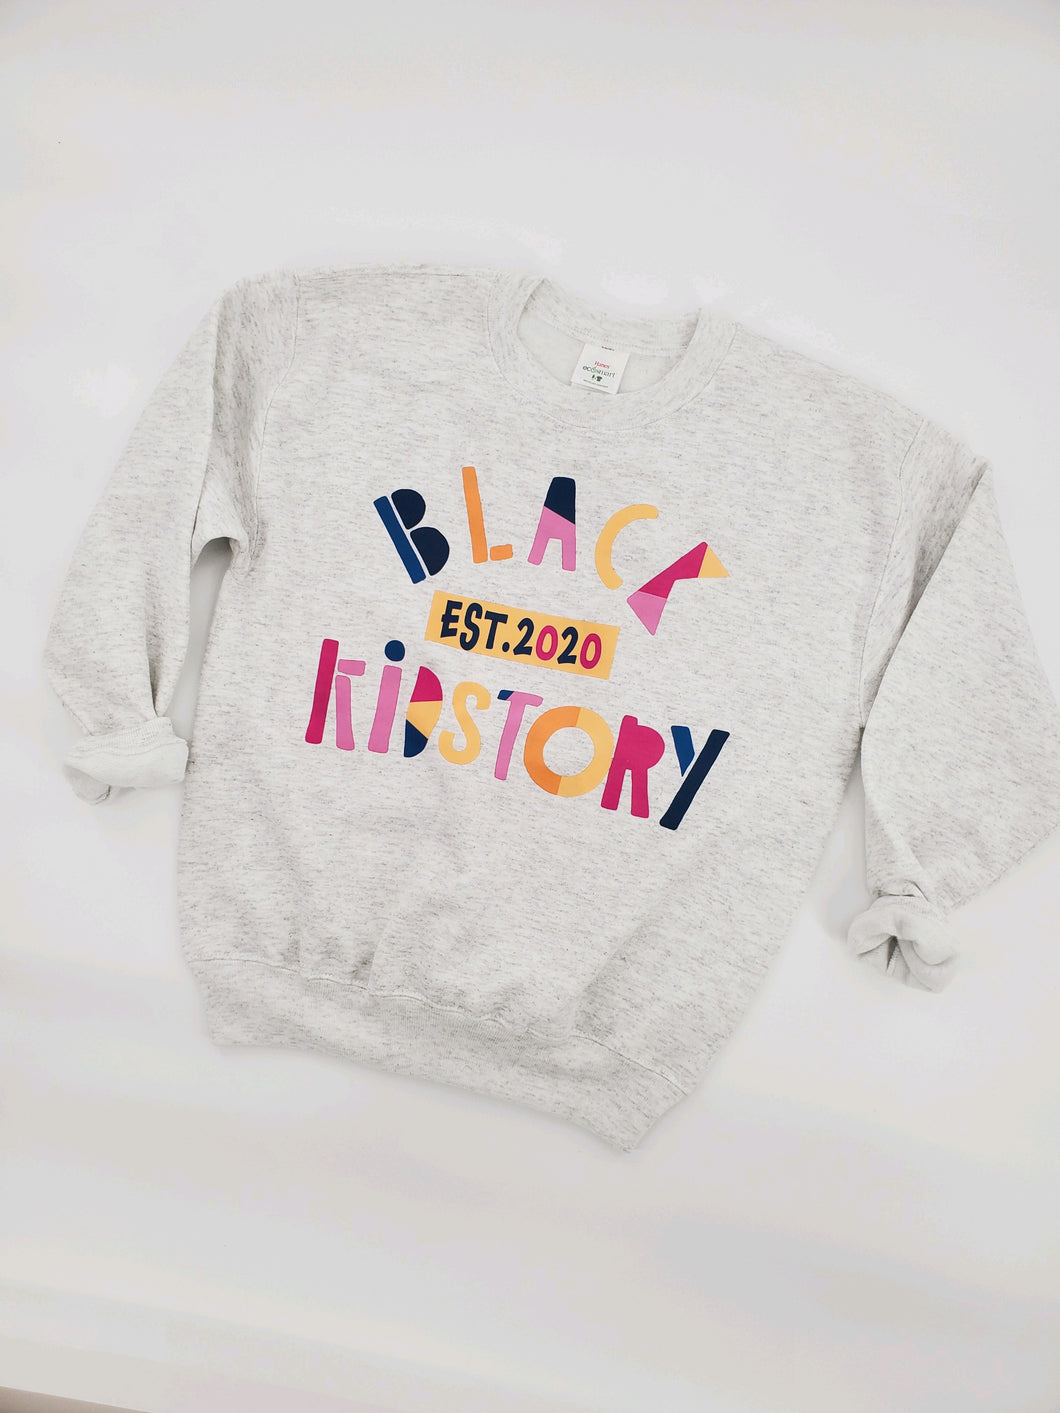 The Black Kidstory Sweatshirt